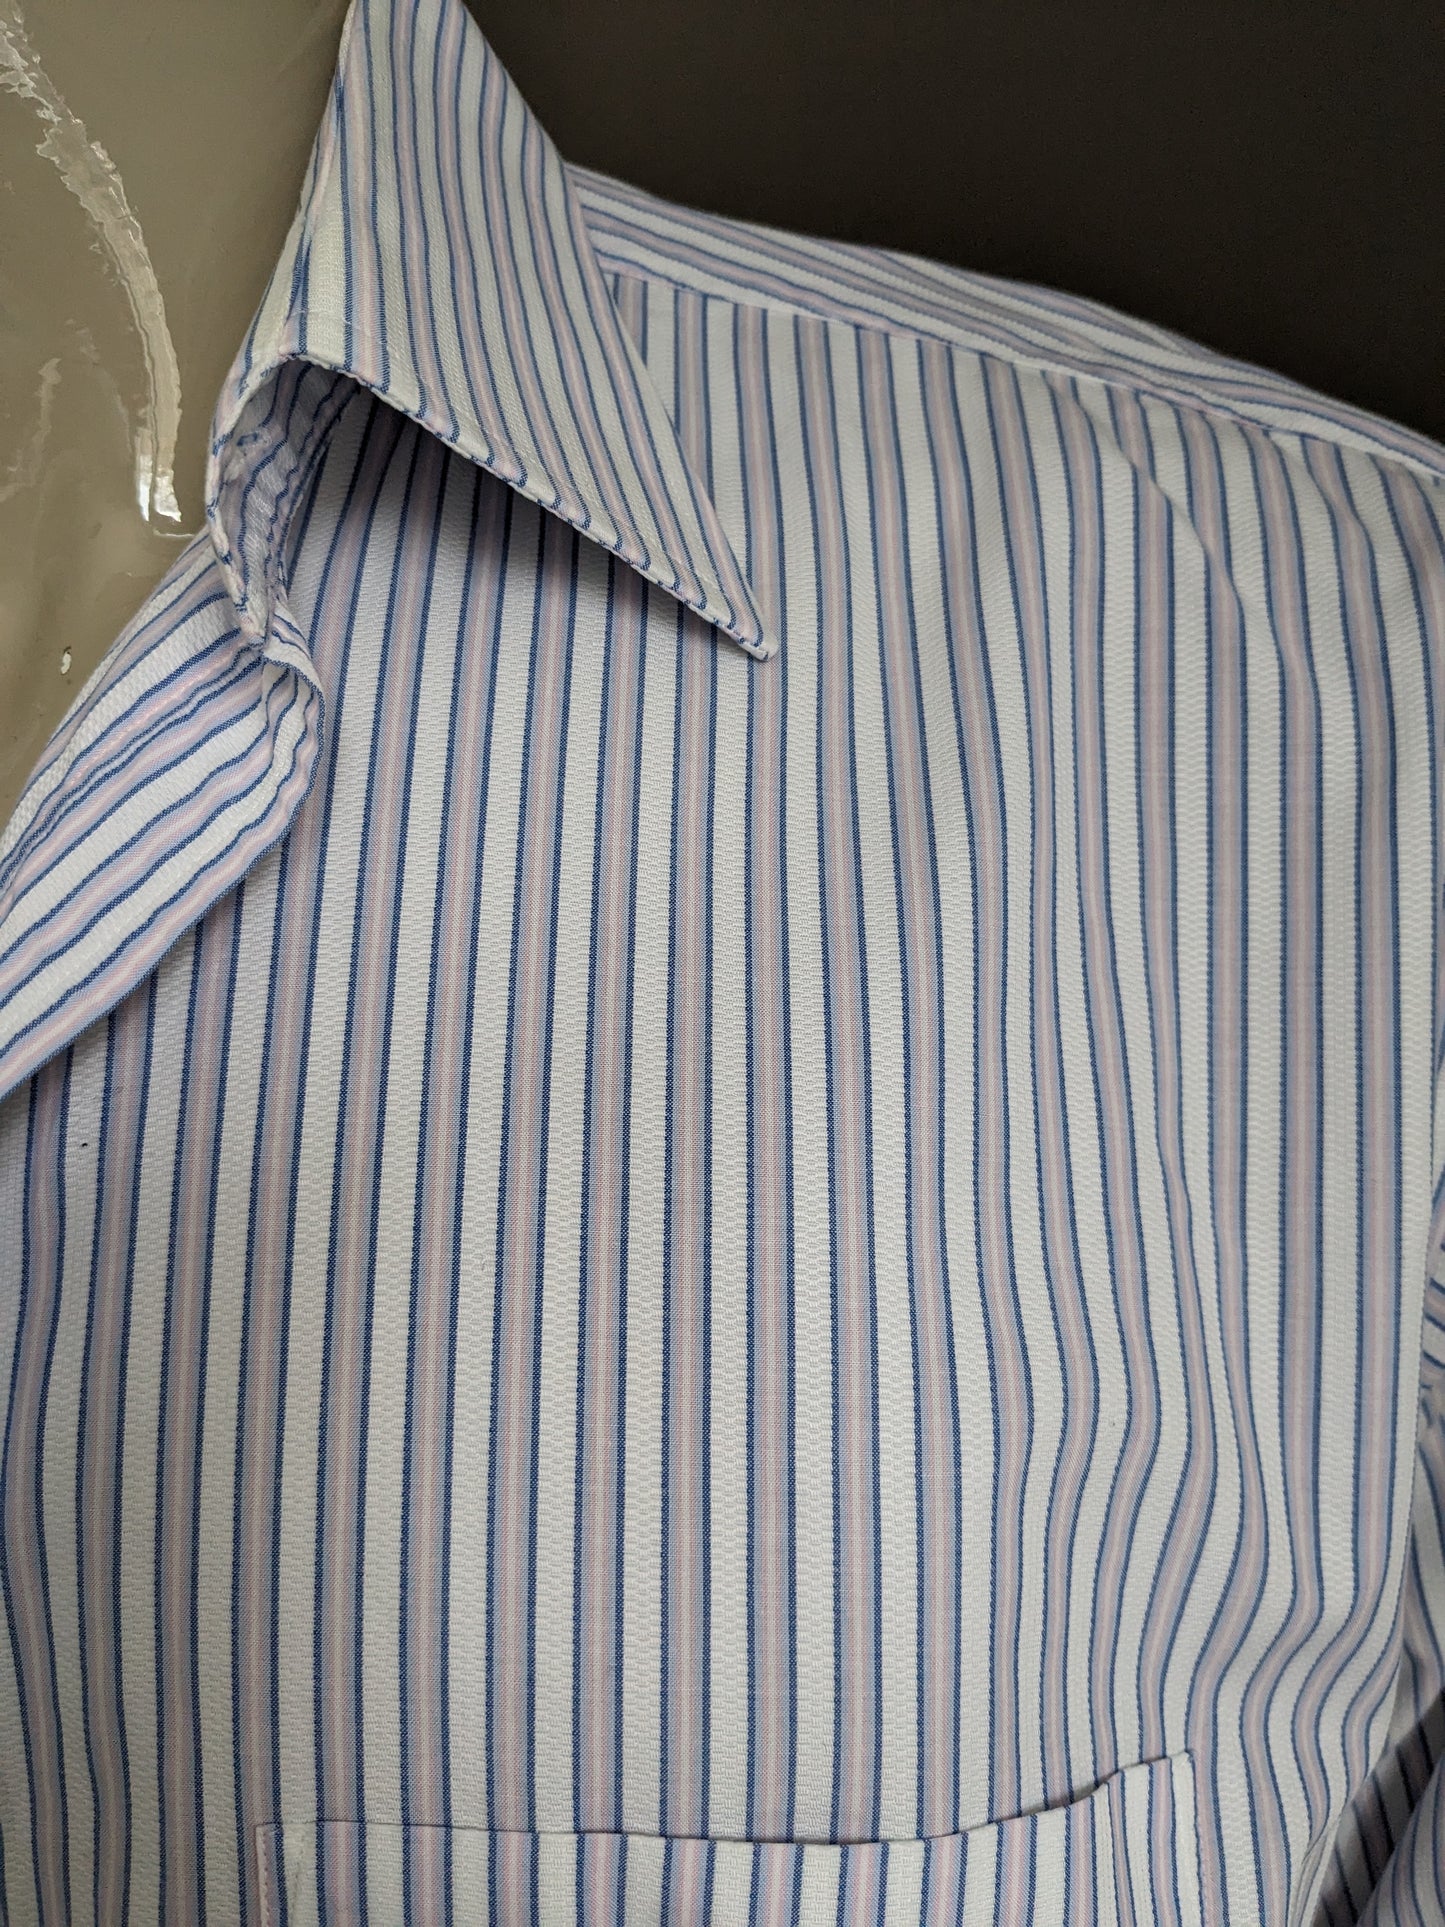 Vintage Arrow overhemd. Blauw Roze Wit gestreept. Maat XL.